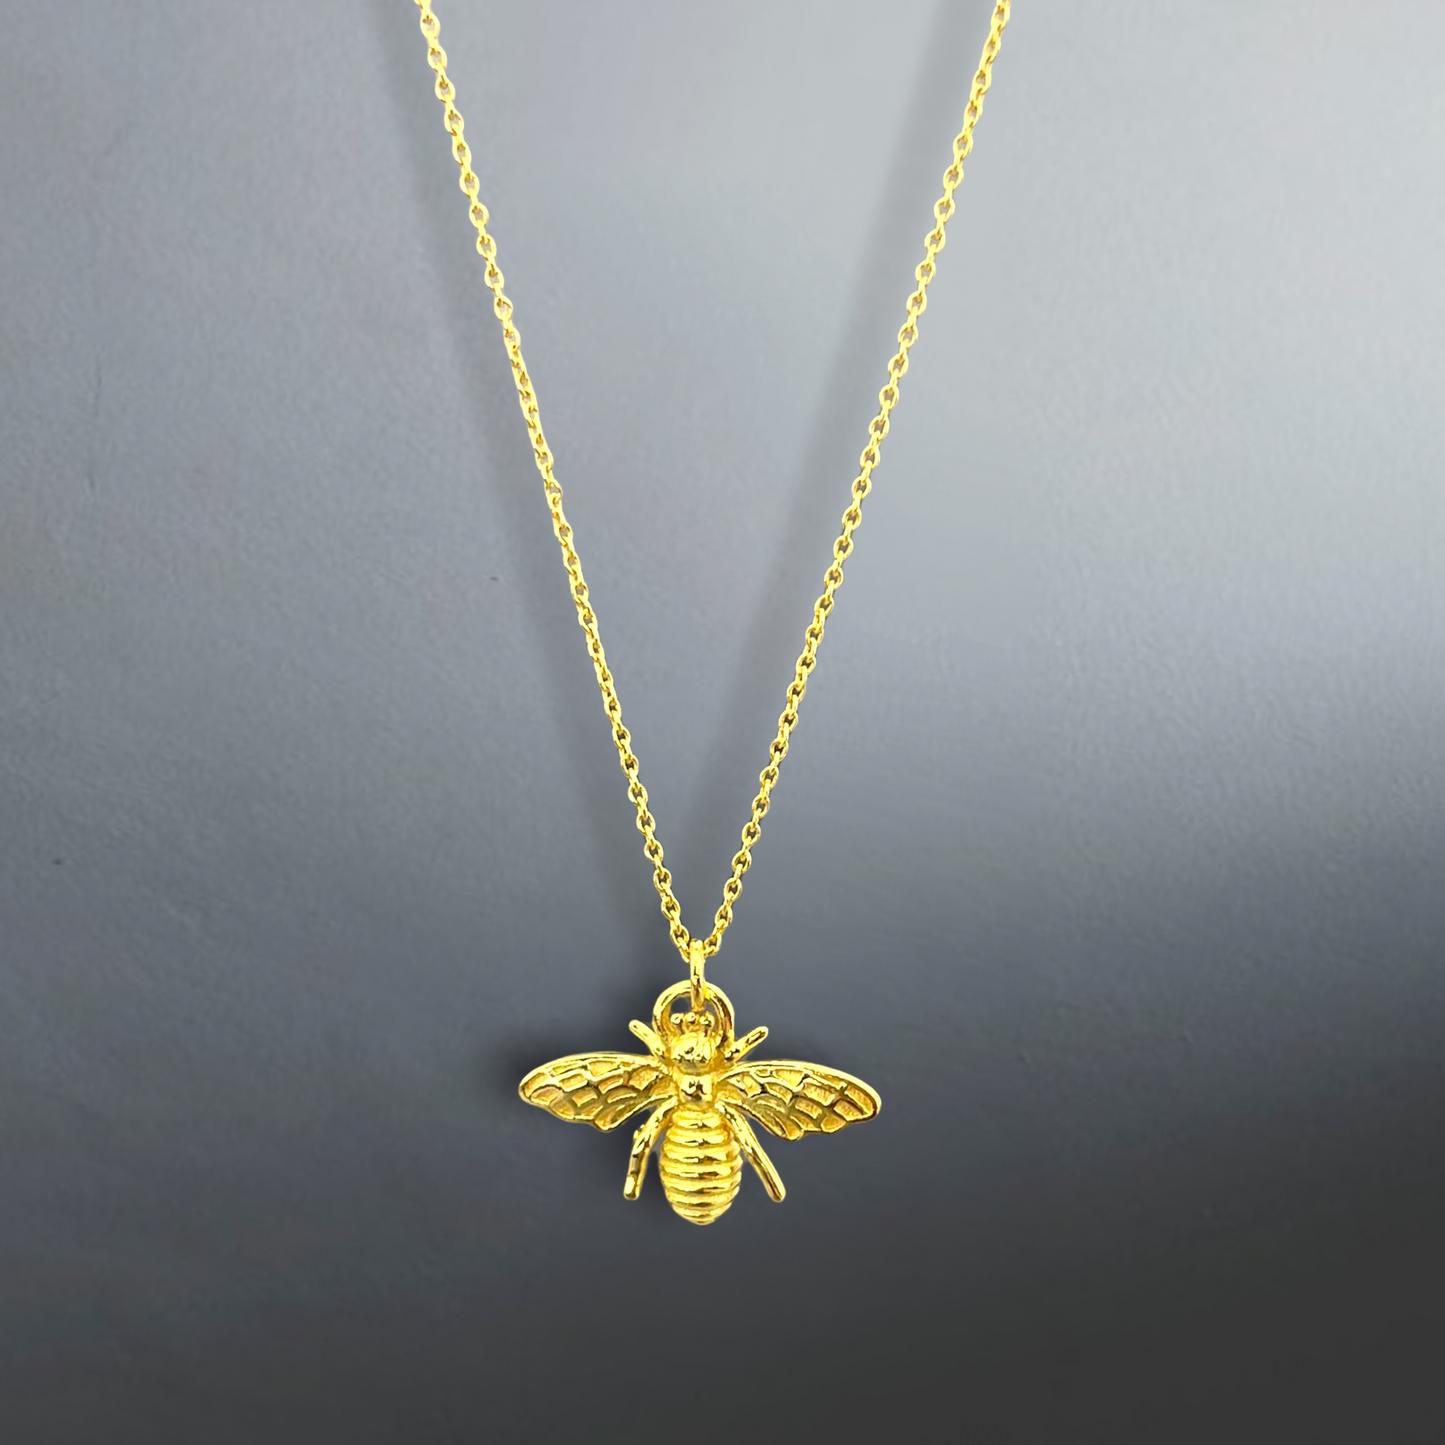 Golden Bee 925 Sterling Gilded Łańcuch - Pomysł na prezent dla ciężko pracujących pszczół - K925-59